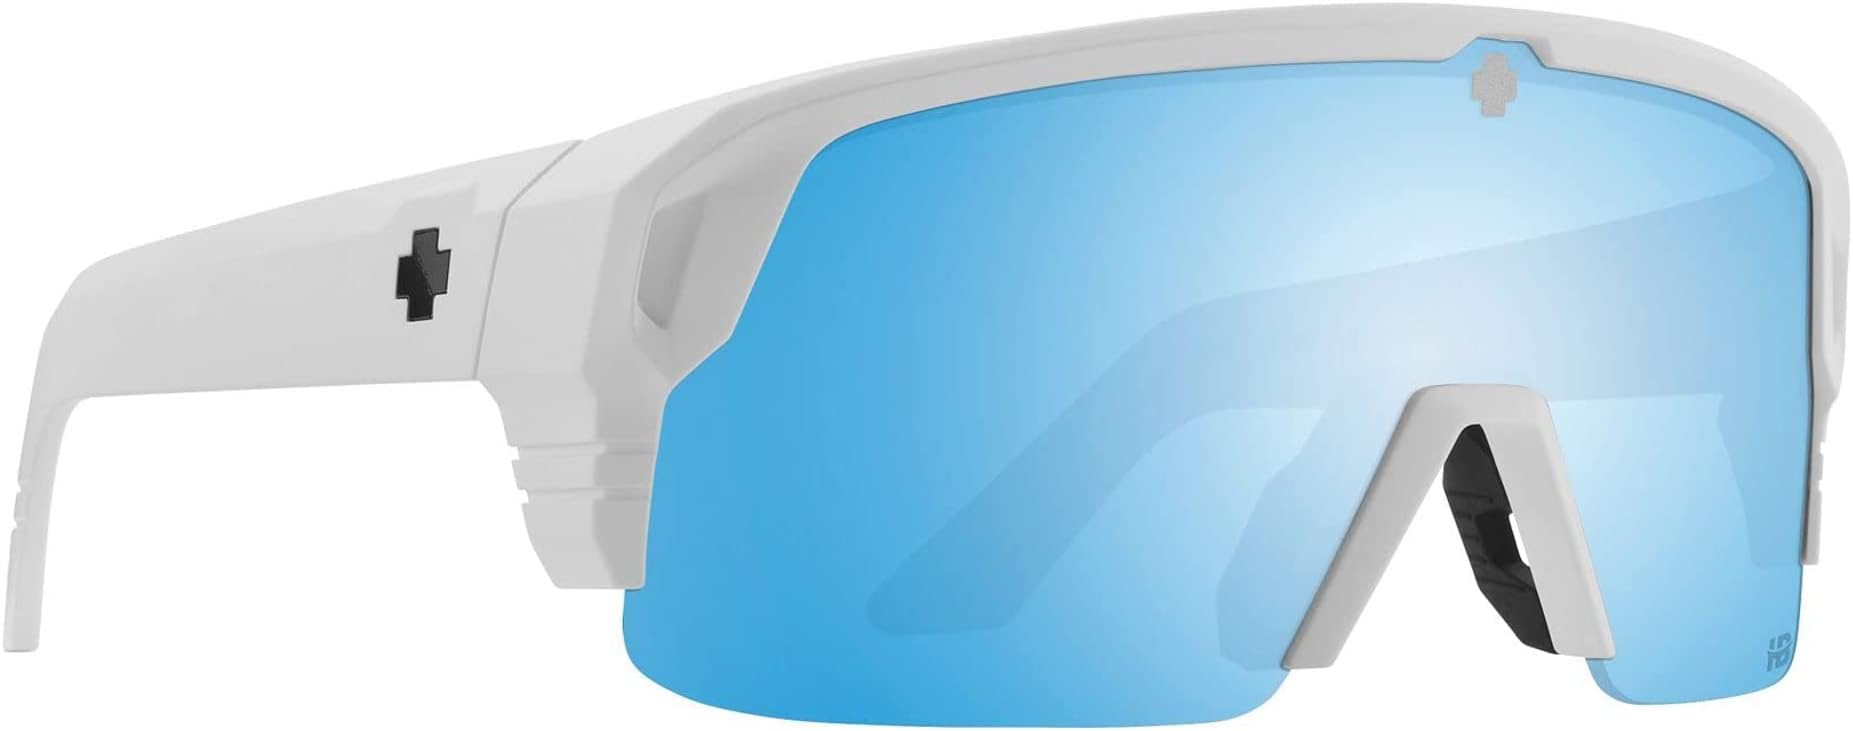 Солнцезащитные очки Monolith 5050 Spy Optic, цвет Matte White/Happy Boost Bronze Polar Ice Blue Spectra Mirror агапантус polar ice